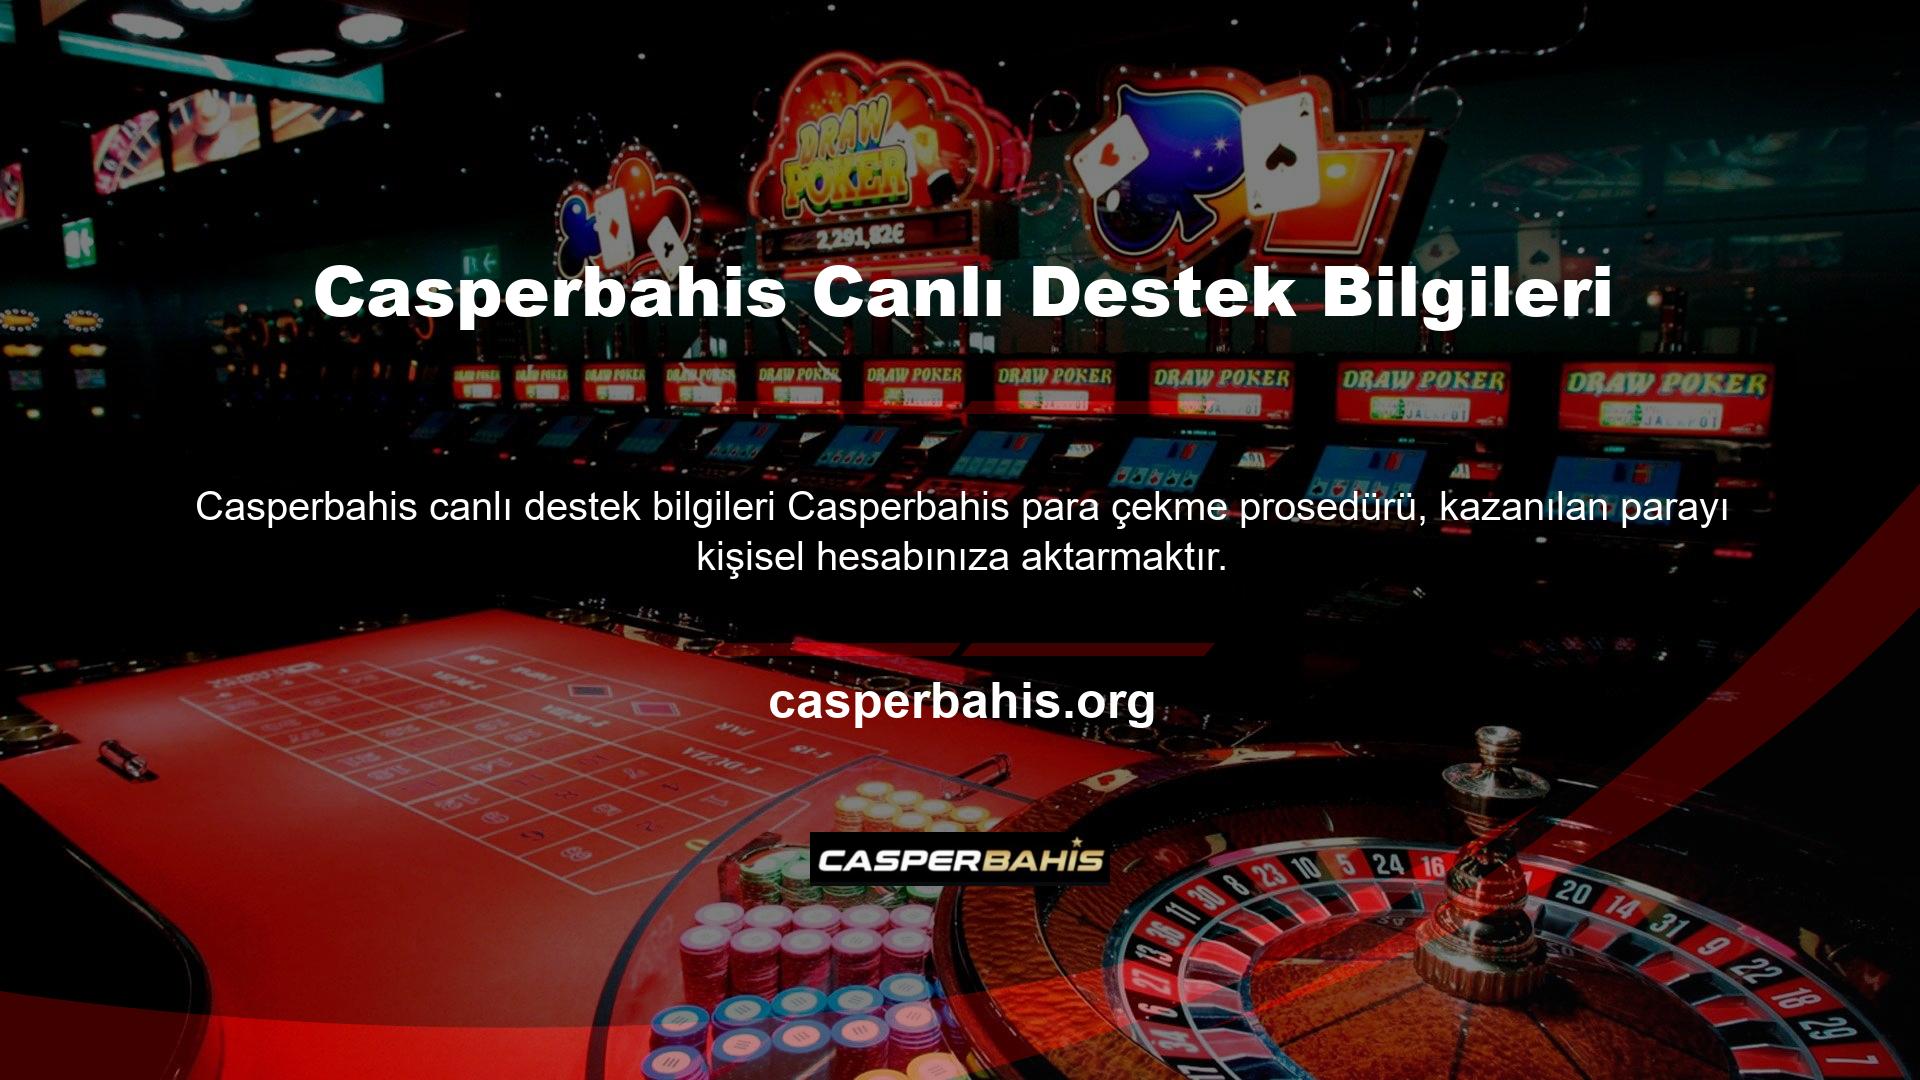 Casperbahis Canlı Destek Bilgilendirme, bahis, canlı bahis, casino ve canlı casino ile uğraşan bahis meraklılarına yönelik bir platformdur